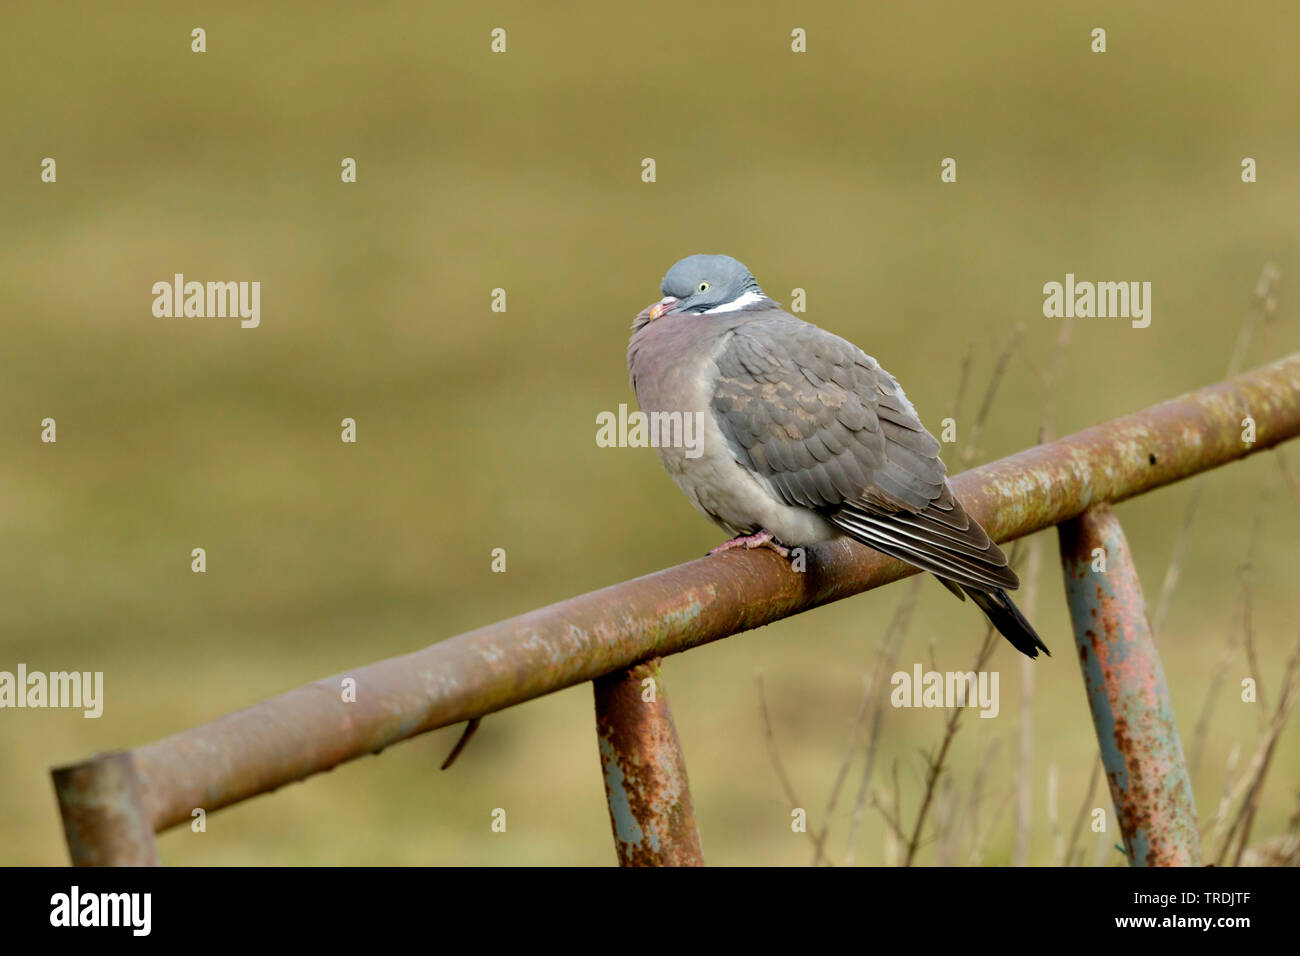 Pigeon ramier (Columba palumbus), perché sur une clôture rouillée , Pays-Bas Banque D'Images